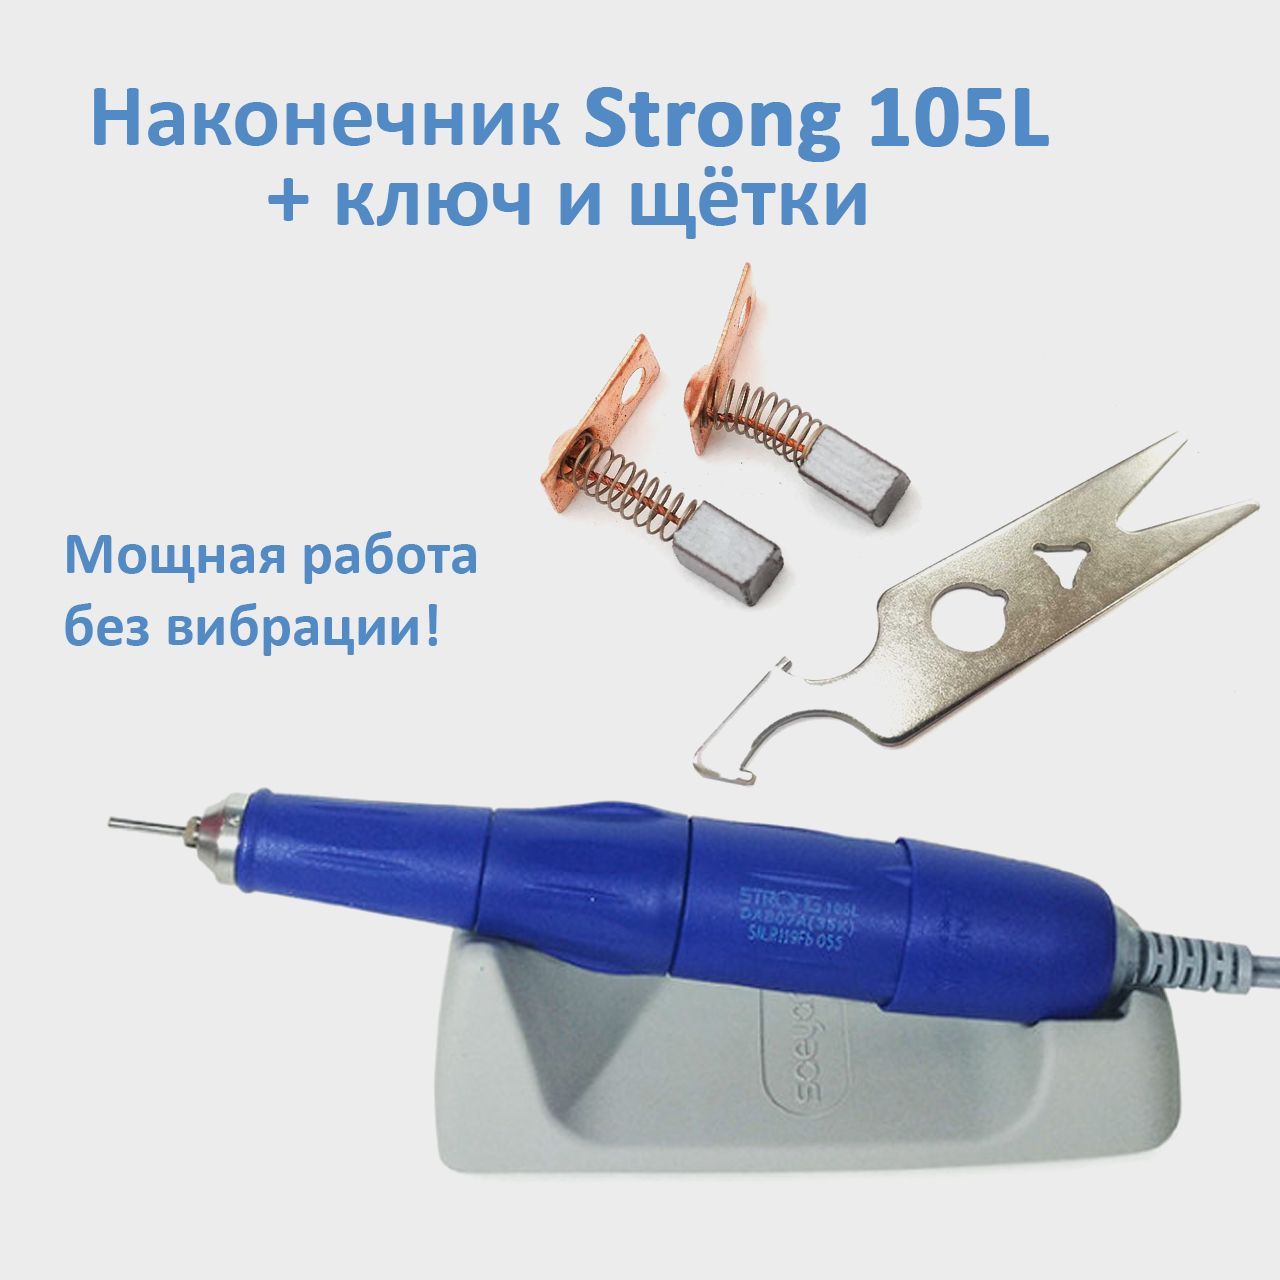 Ручка для маникюра Strong 105L 35000 оборотов, сменные щетки и ключ для наконечника С съемник подшипников тундра 24 55 мм